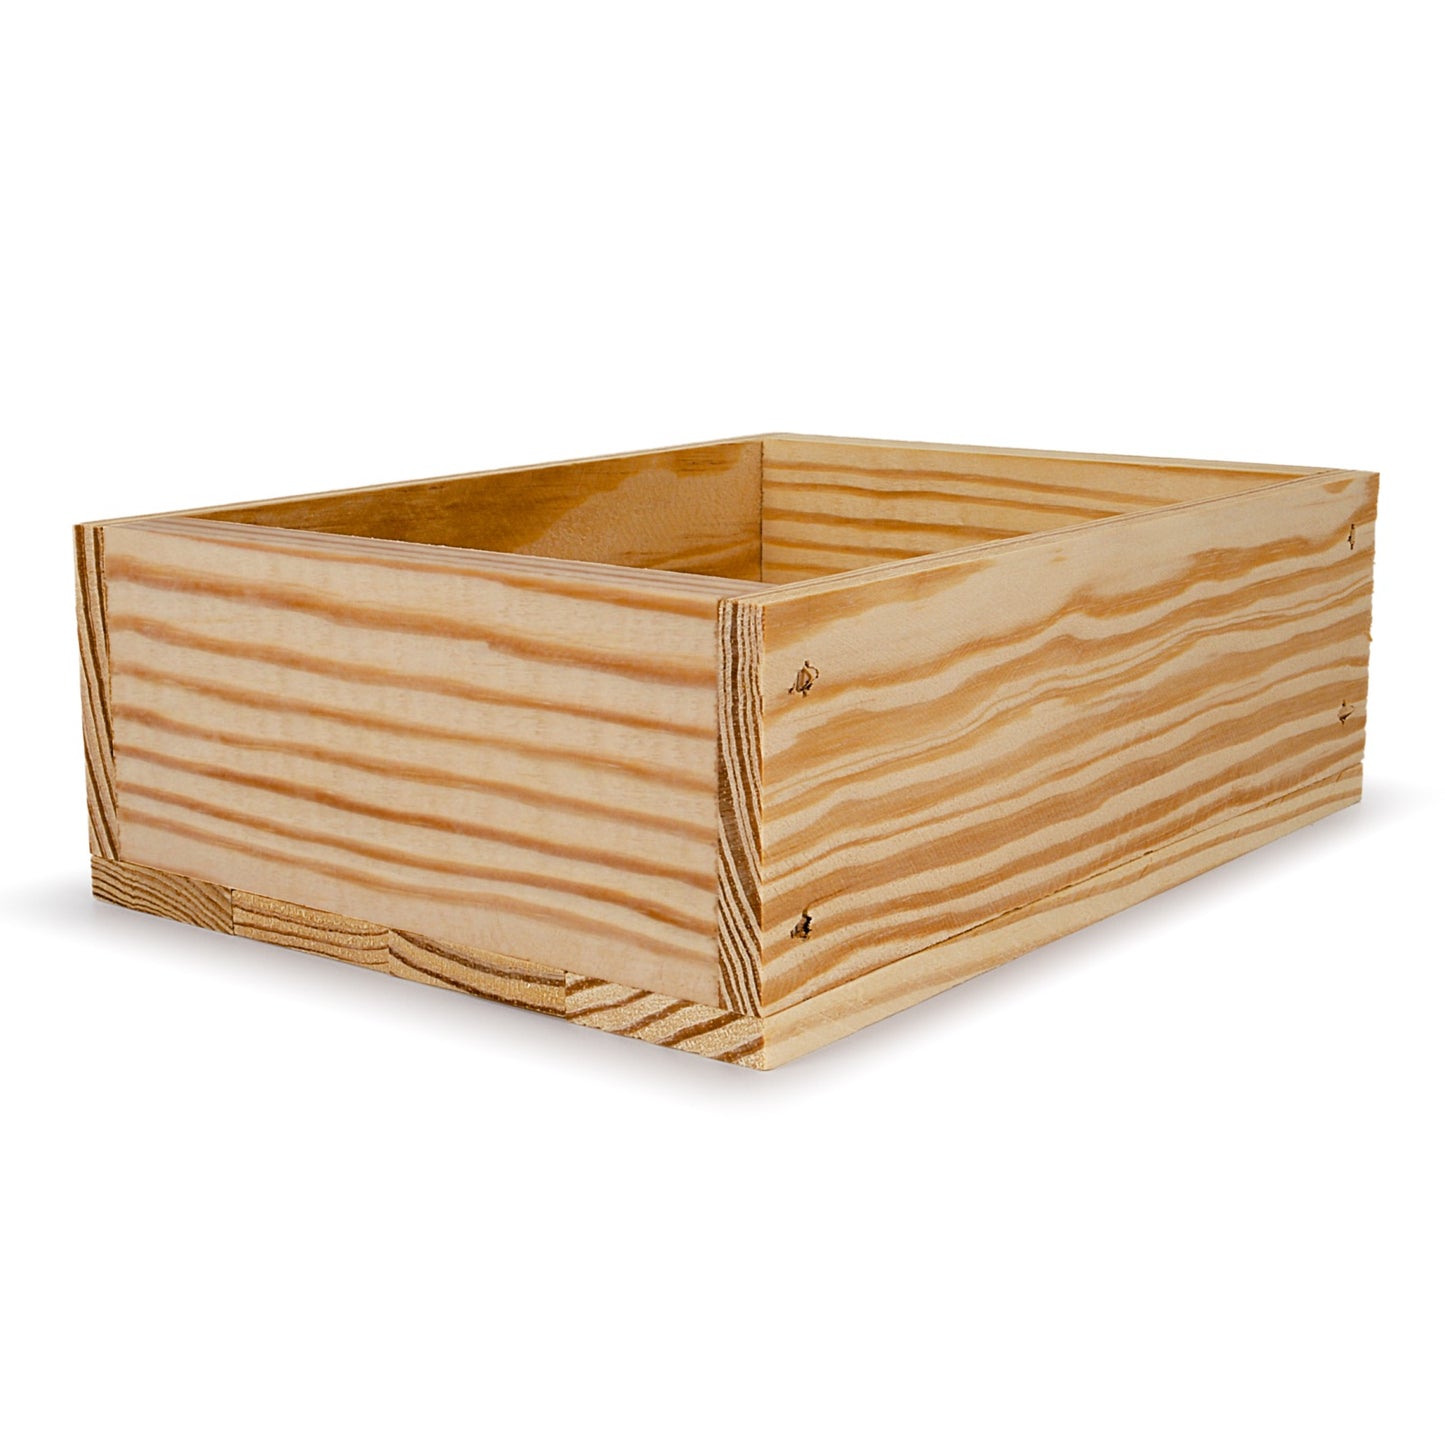 Small wooden crate 8x6.25x2.75, 6-BX-8-6.25-2.75-NX-NW-NL, 12-BX-8-6.25-2.75-NX-NW-NL, 24-BX-8-6.25-2.75-NX-NW-NL, 48-BX-8-6.25-2.75-NX-NW-NL, 96-BX-8-6.25-2.75-NX-NW-NL